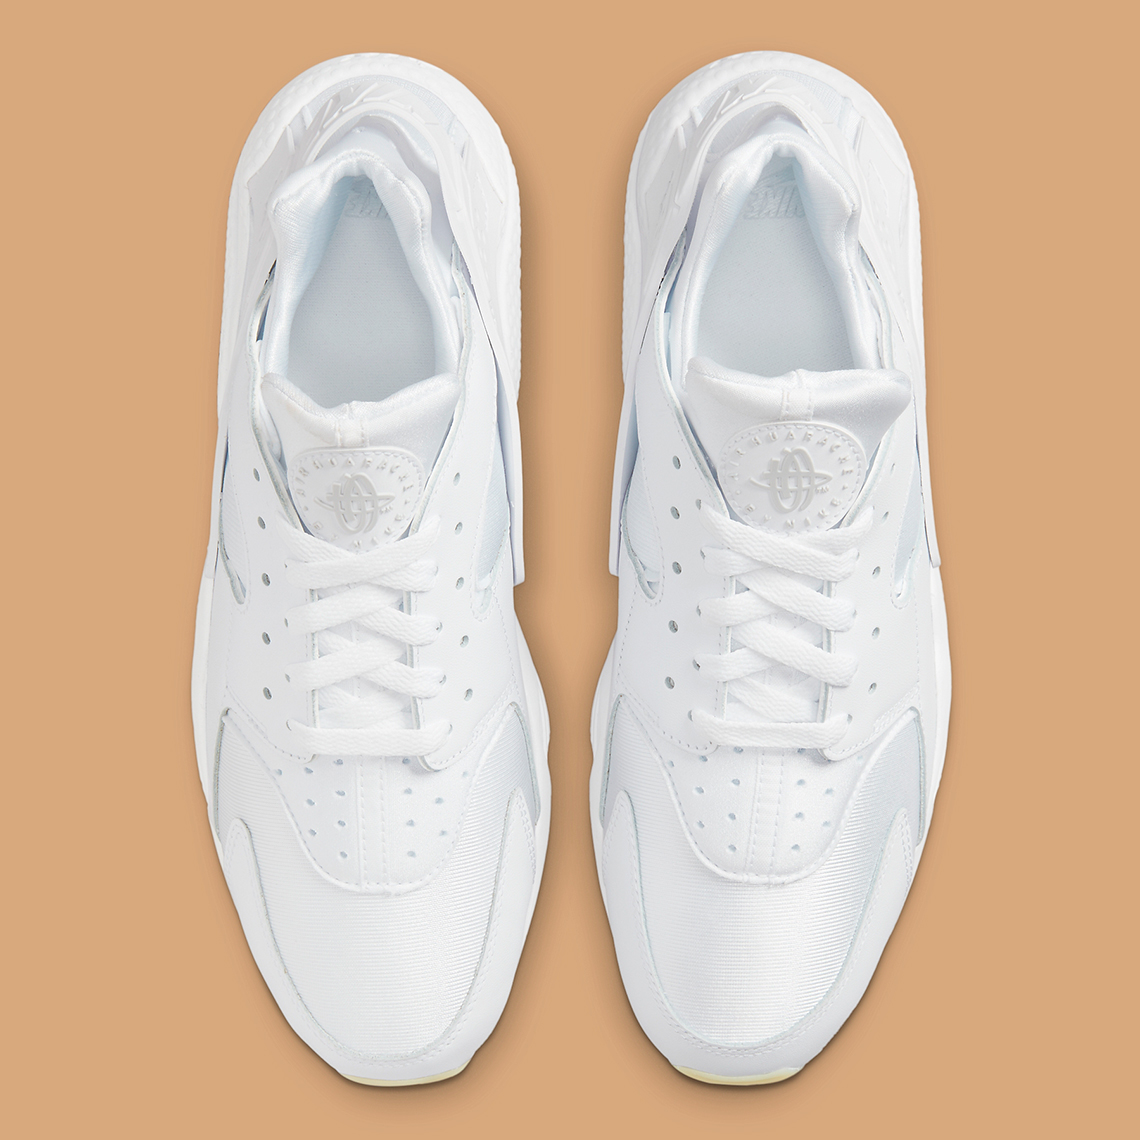 Nike Air Huarache White Gum Dr9883 100 Release Date 4